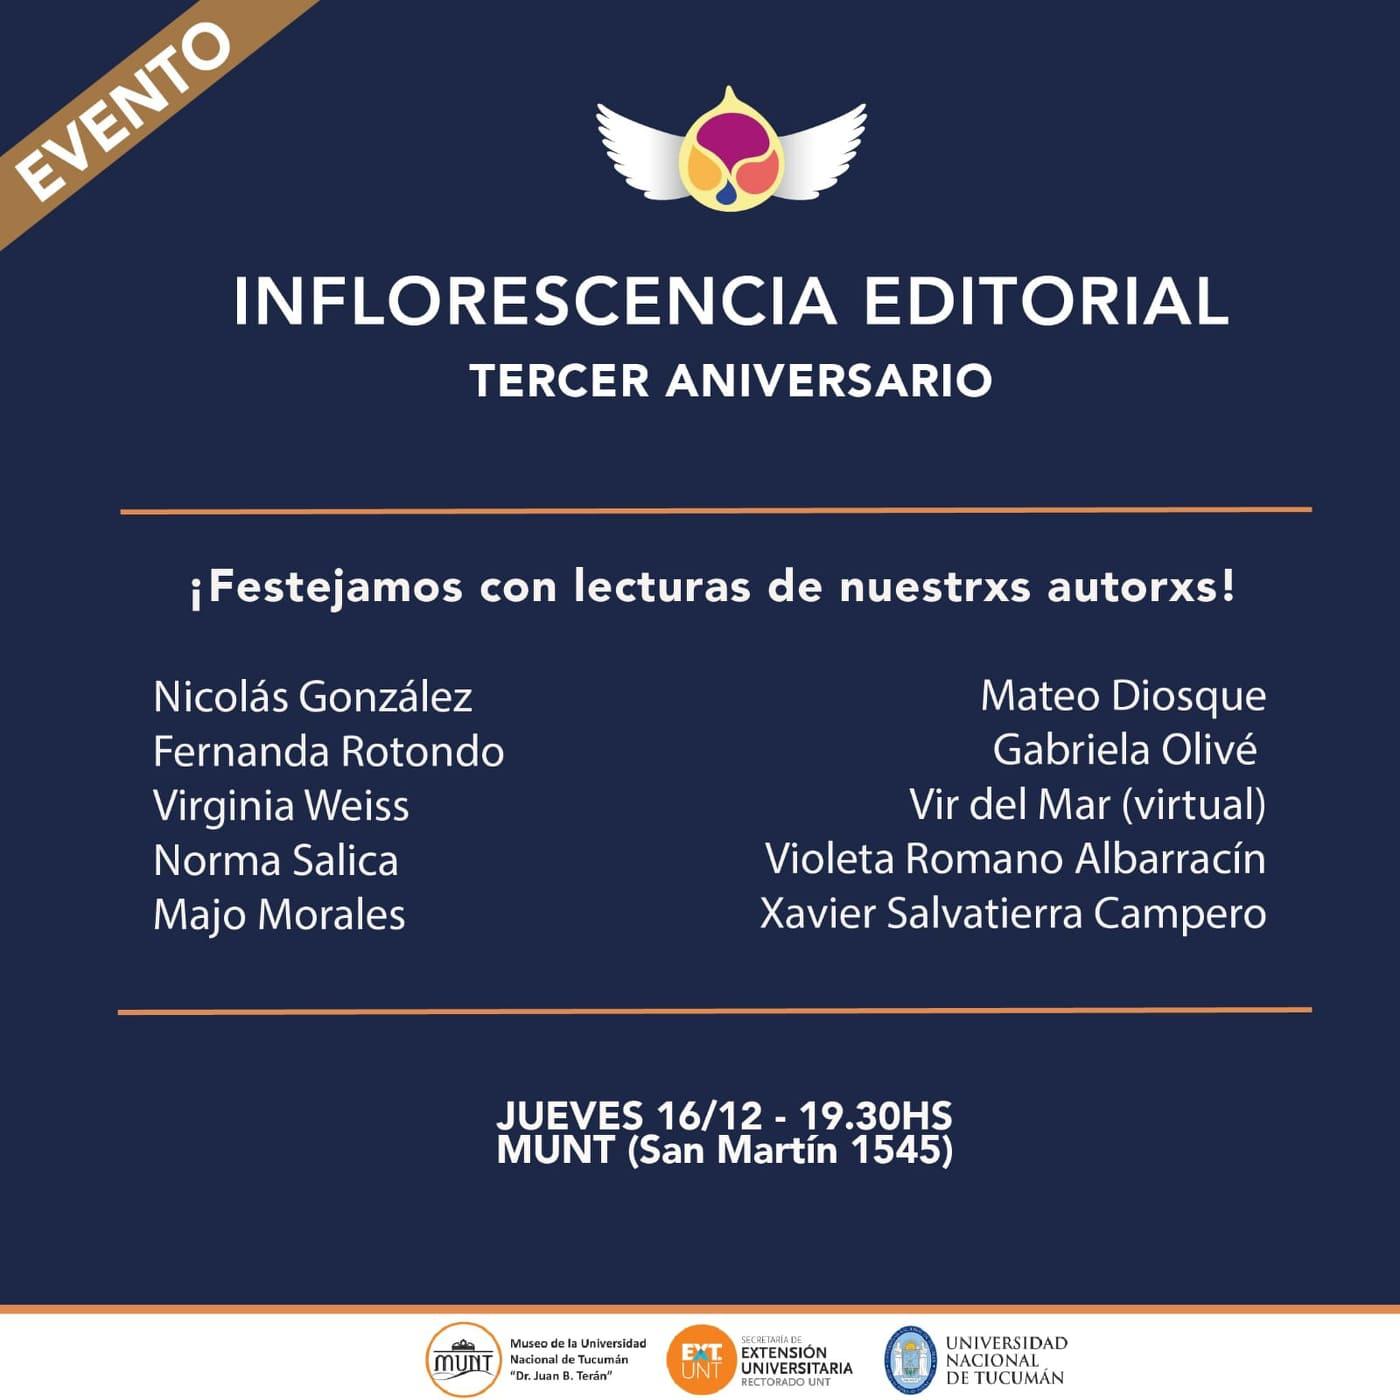 Inflorescencia Editorial festeja 3 años de trayectoria independiente y autogestiva